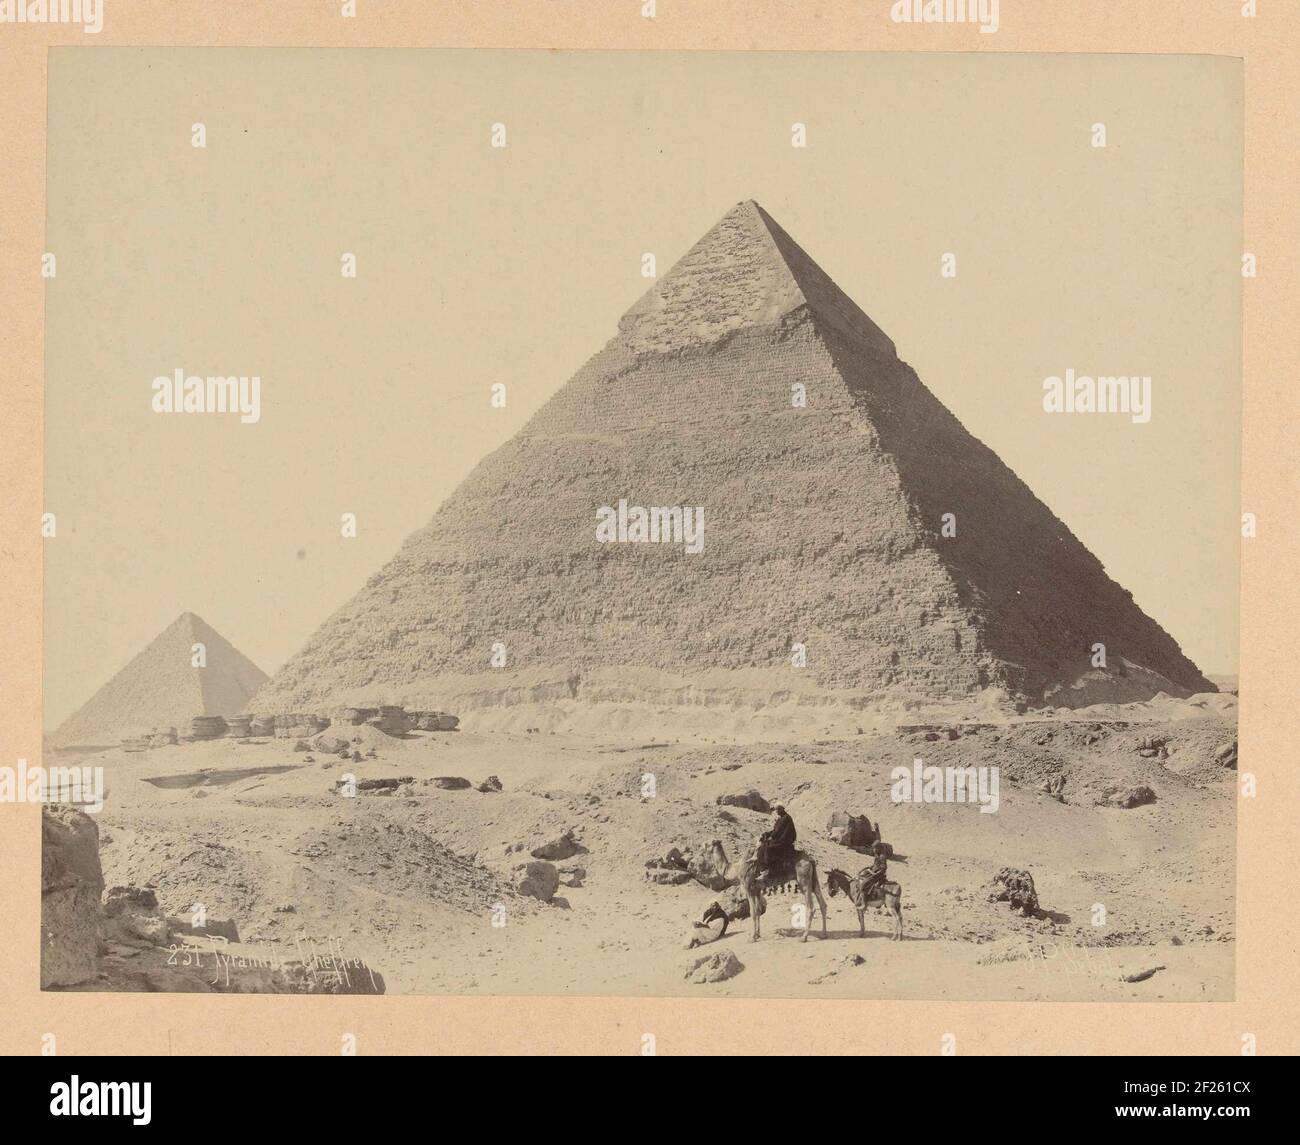 Как строили пирамиду хеопса. Пирамида Хеопса древний Египет. Пирамида Хефрена древний Египет. Пирамида Хеопса в древности. Древний Египет пирамида Хеопса постройка.